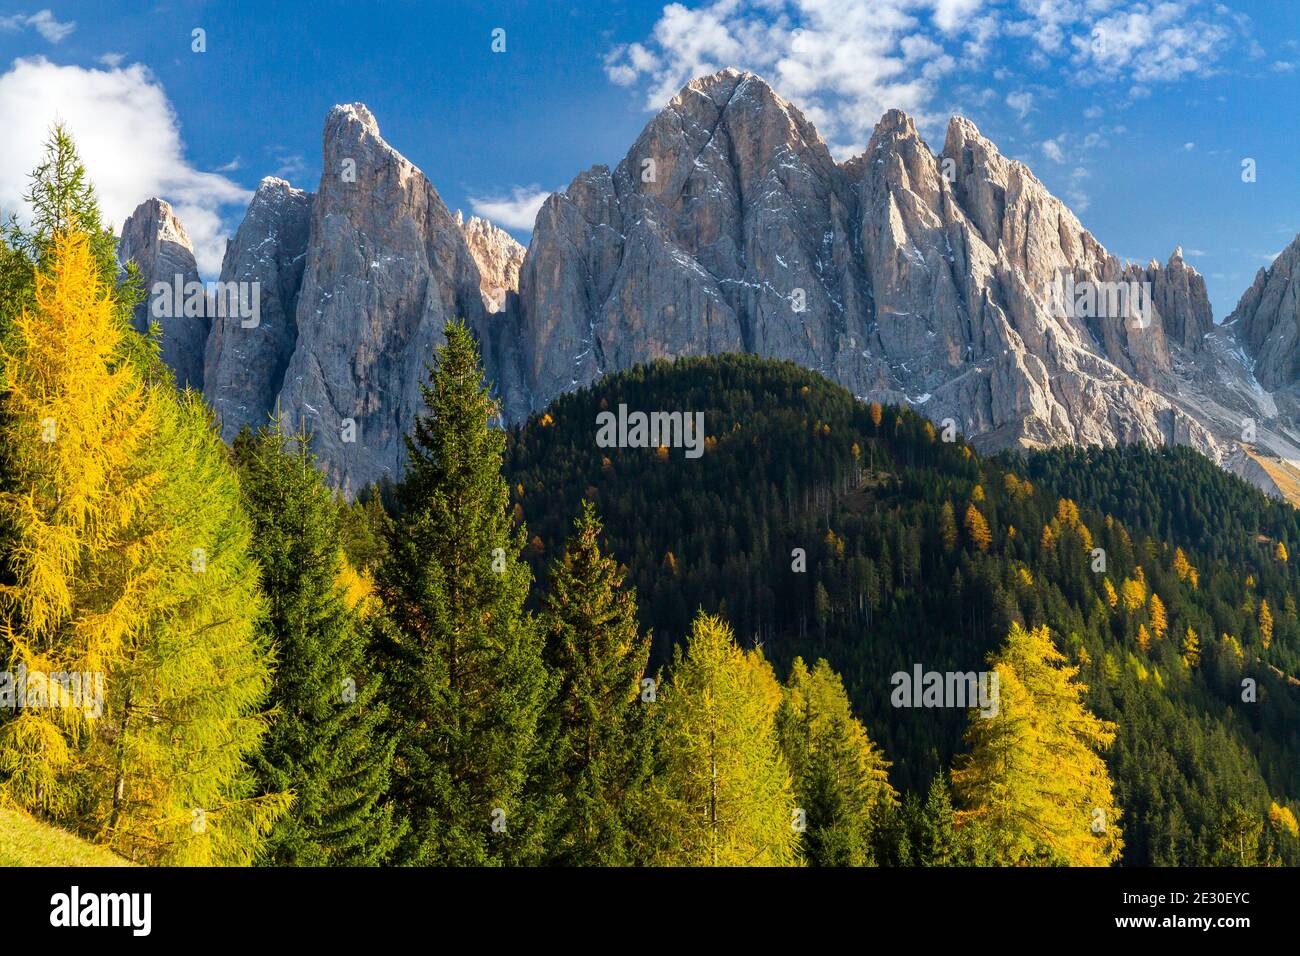 Blick auf die Geisler-Gruppe von der Straße nach Malga Zannes. Villnösser Tal, Dolomiten, Trentino-Südtirol, Italien. Stockfoto